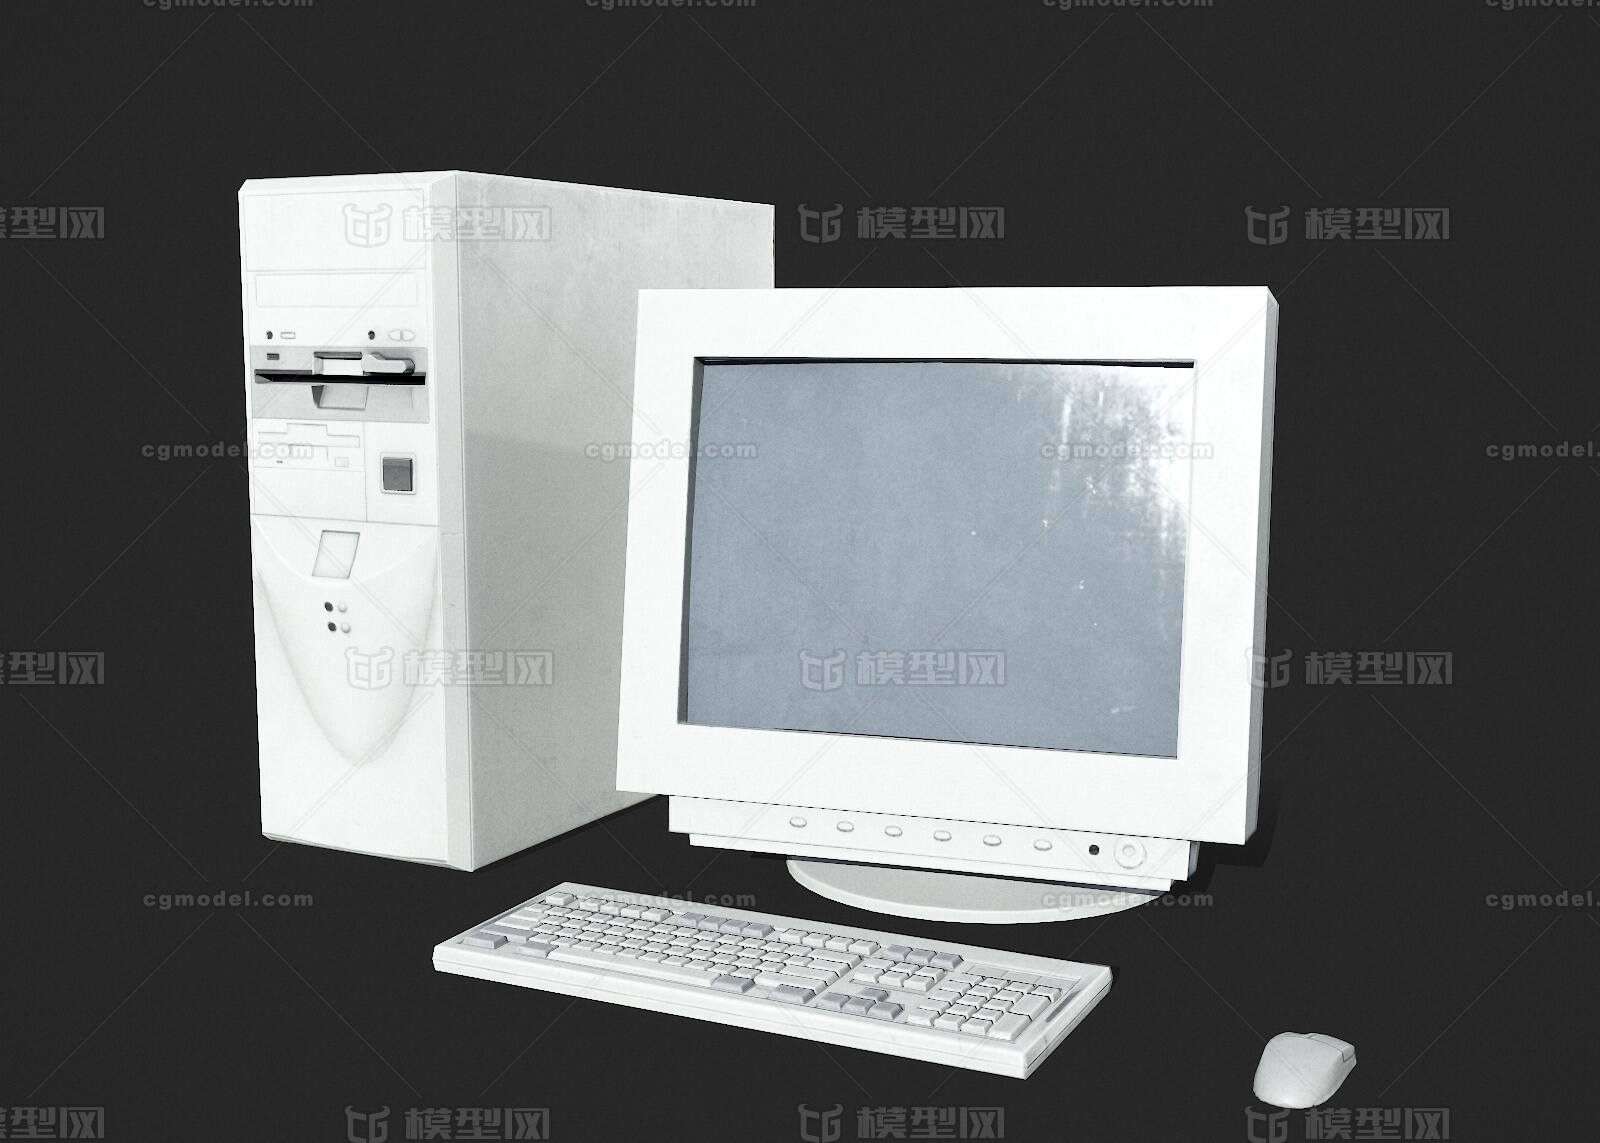 老古董IBM笔记本电脑-价格:350元-se50107788-笔记本电脑-零售-7788收藏__收藏热线